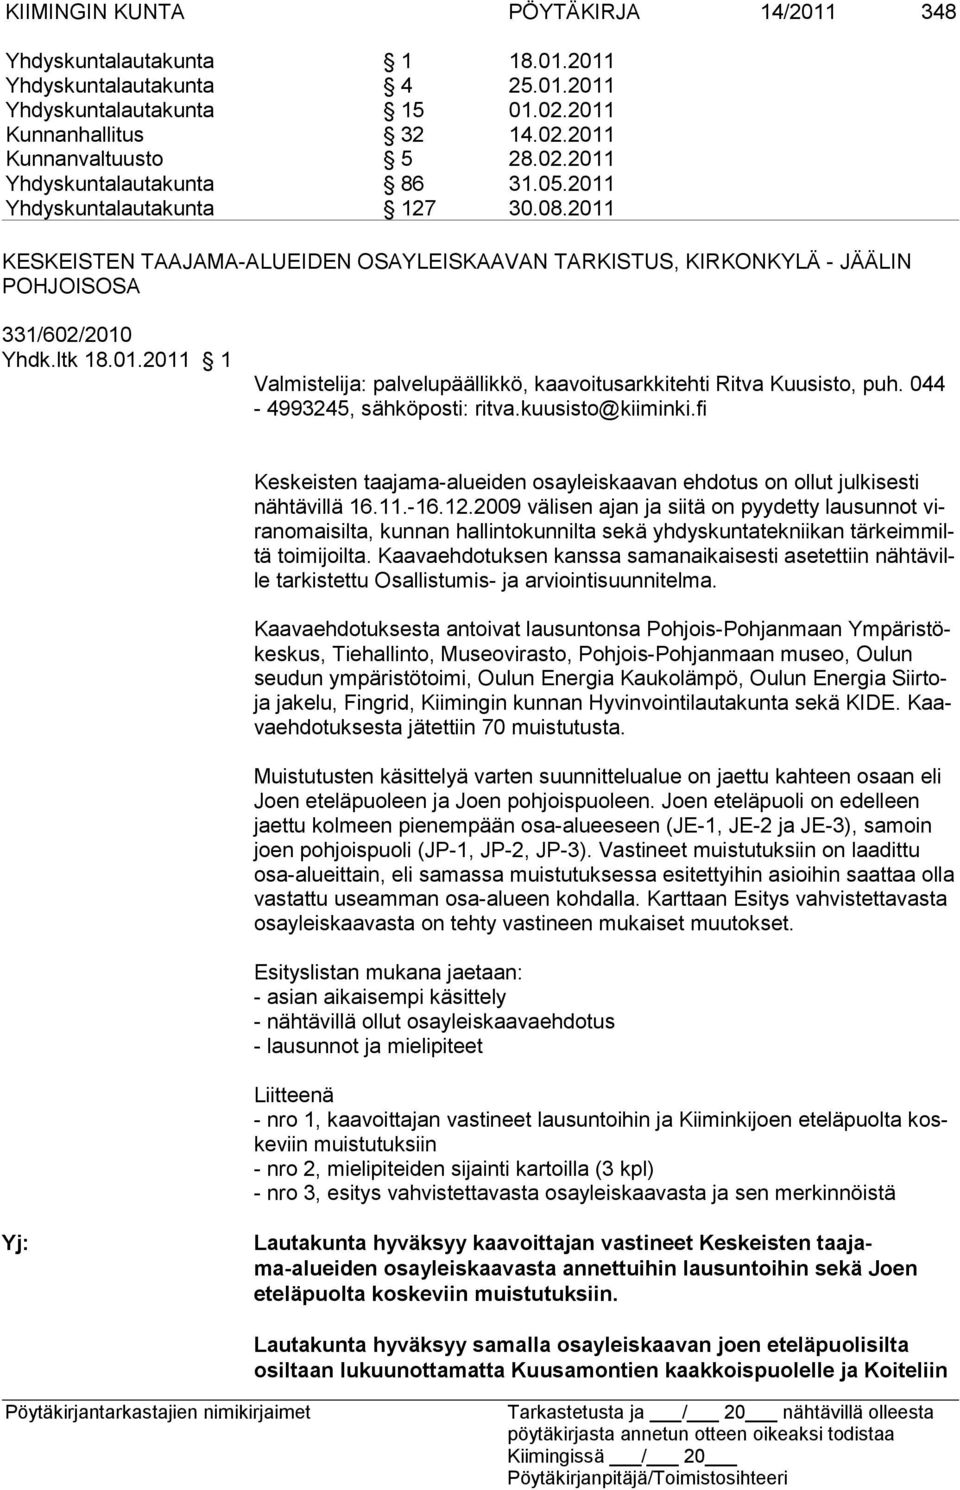 044-4993245, sähkö posti: ritva.kuusisto@kiiminki.fi Keskeisten taajama-alueiden osayleiskaavan ehdotus on ollut julkisesti näh tä villä 16.11.-16.12.